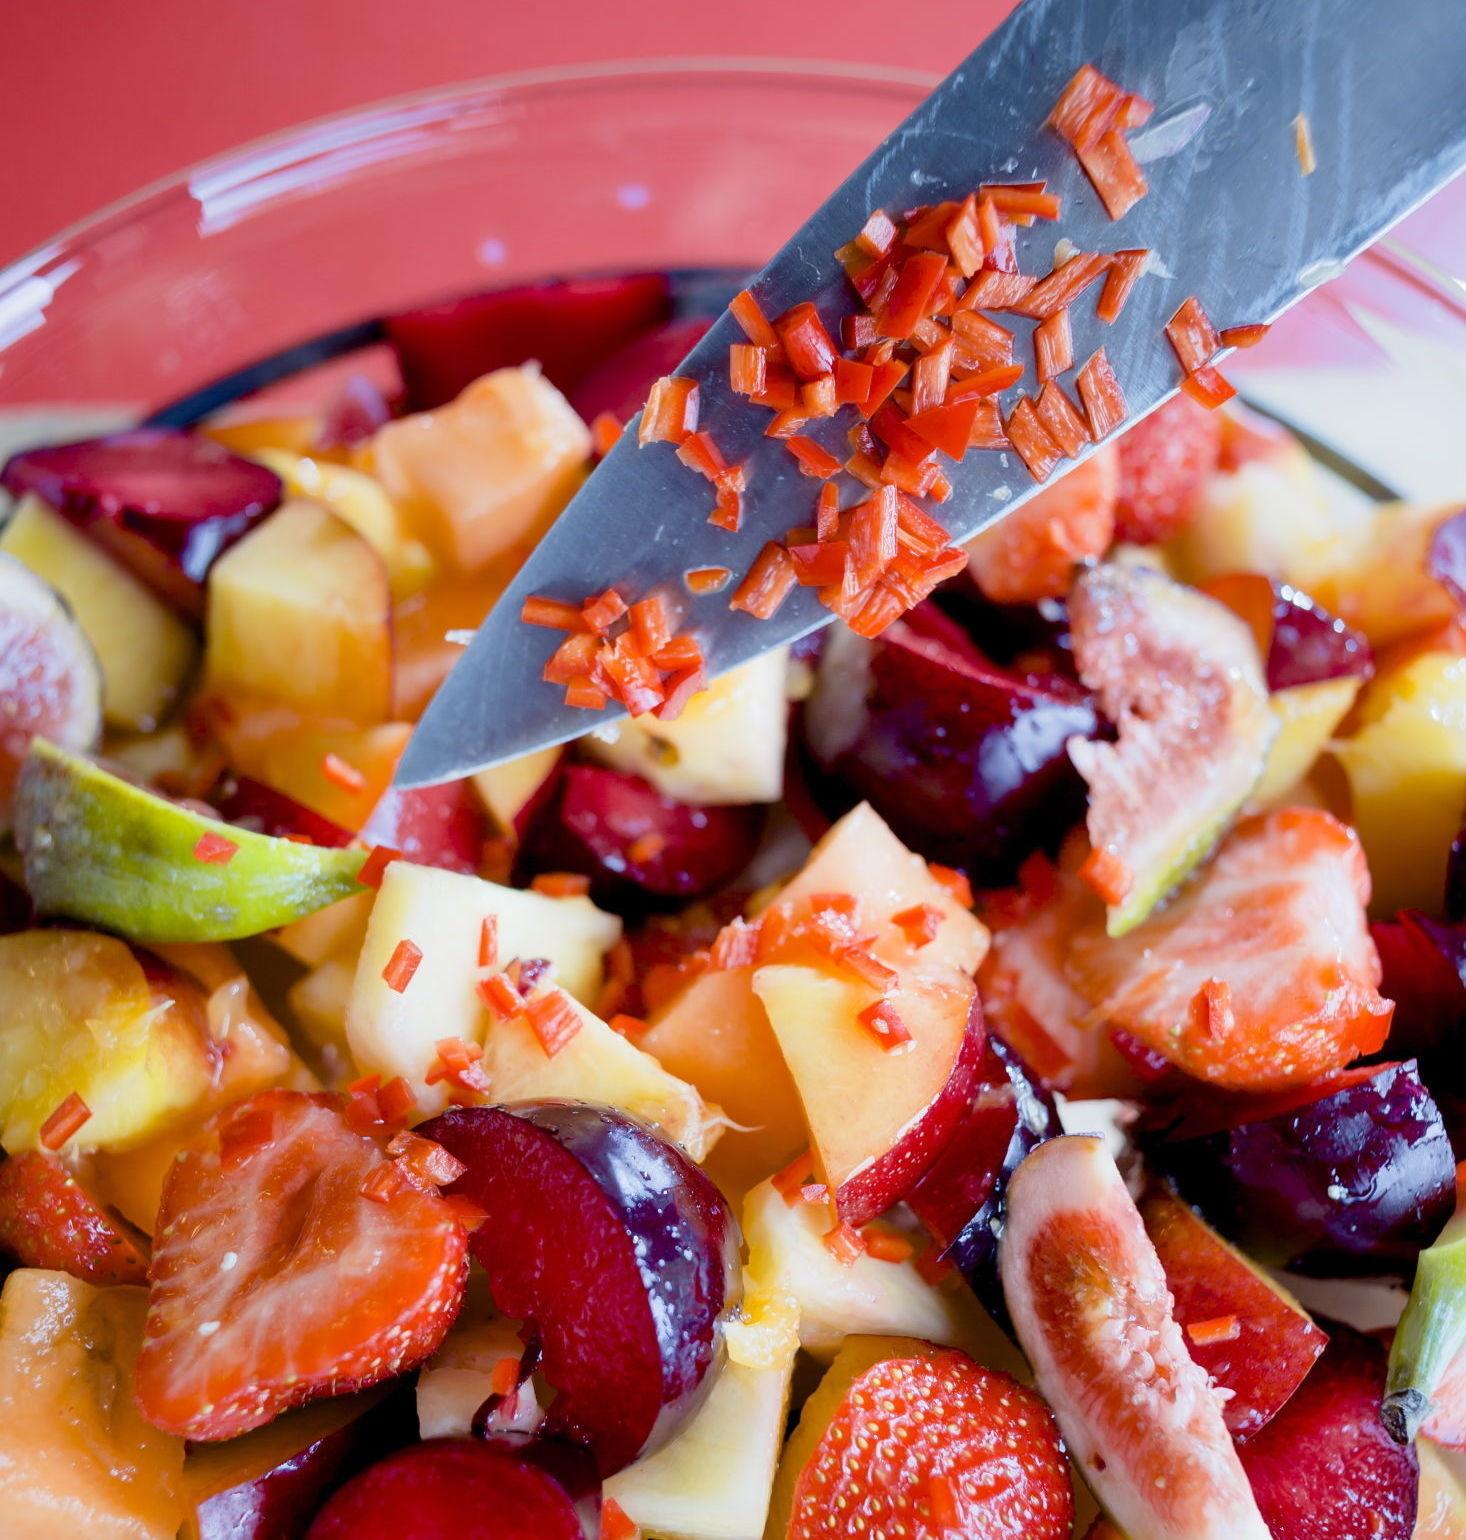 SPENNENDE: Overrask gjestene med en ny vri på fruktsalaten. Det er forøvrig kjempegodt å bake frukt i ovnen. Foto: Krister Sørbø/VG